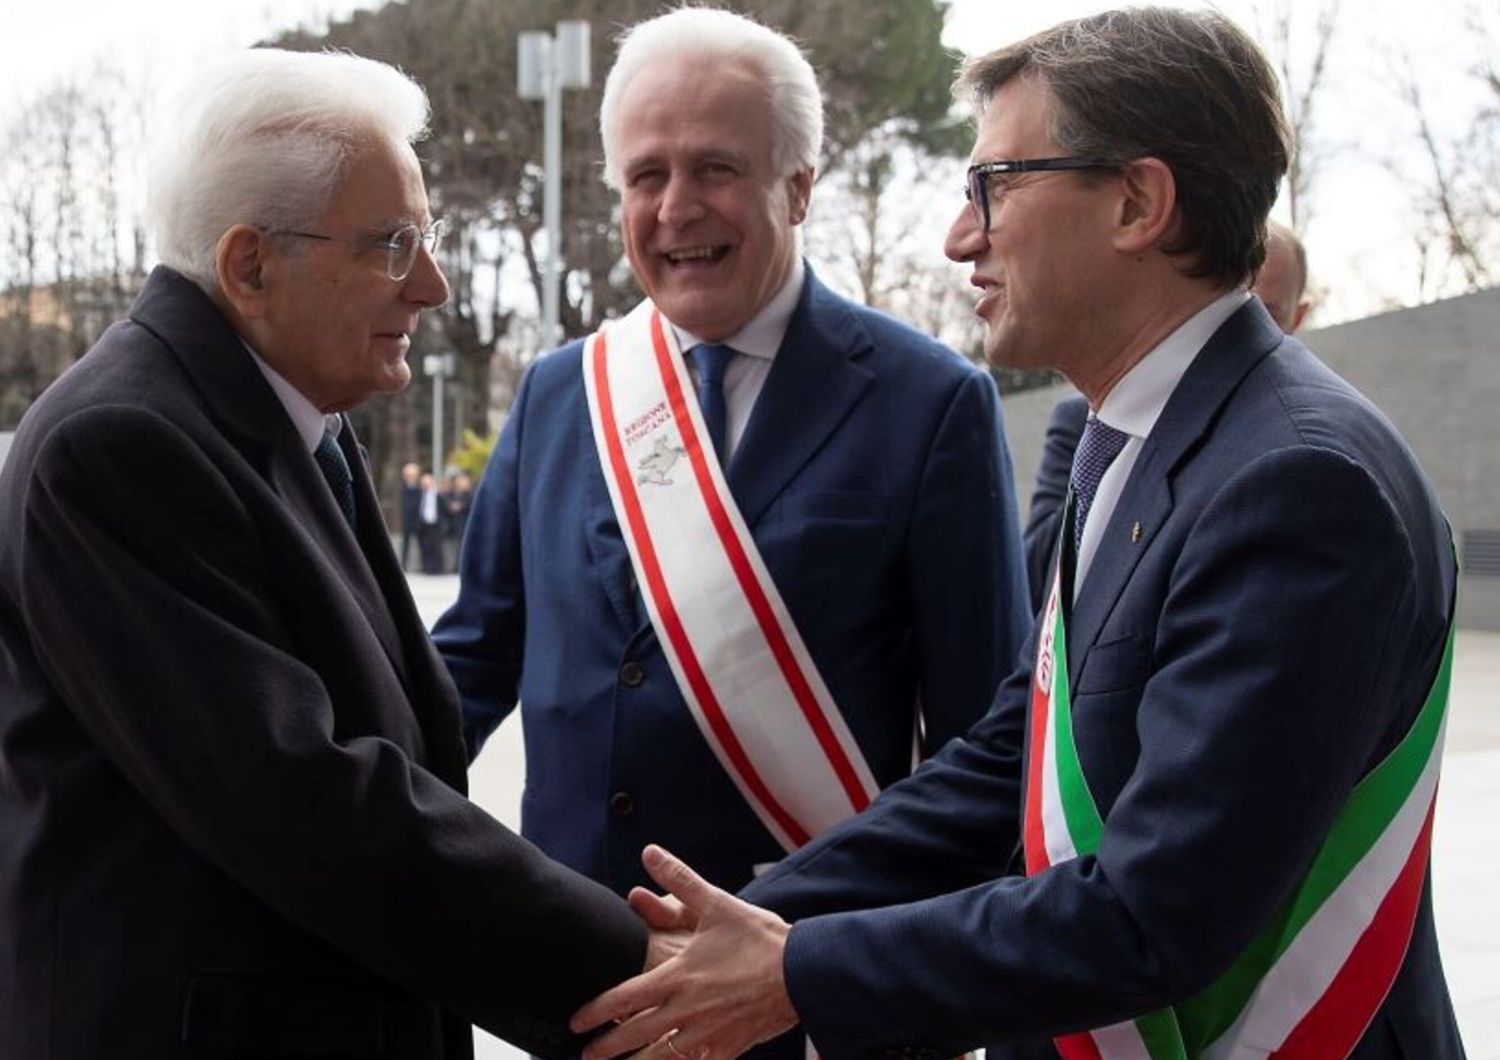 Il presidente della Repubblica, Sergio Mattarella accorto a Firenze dal presidente della Regione Toscana Giani e dal sindaco di Firenze Nardella